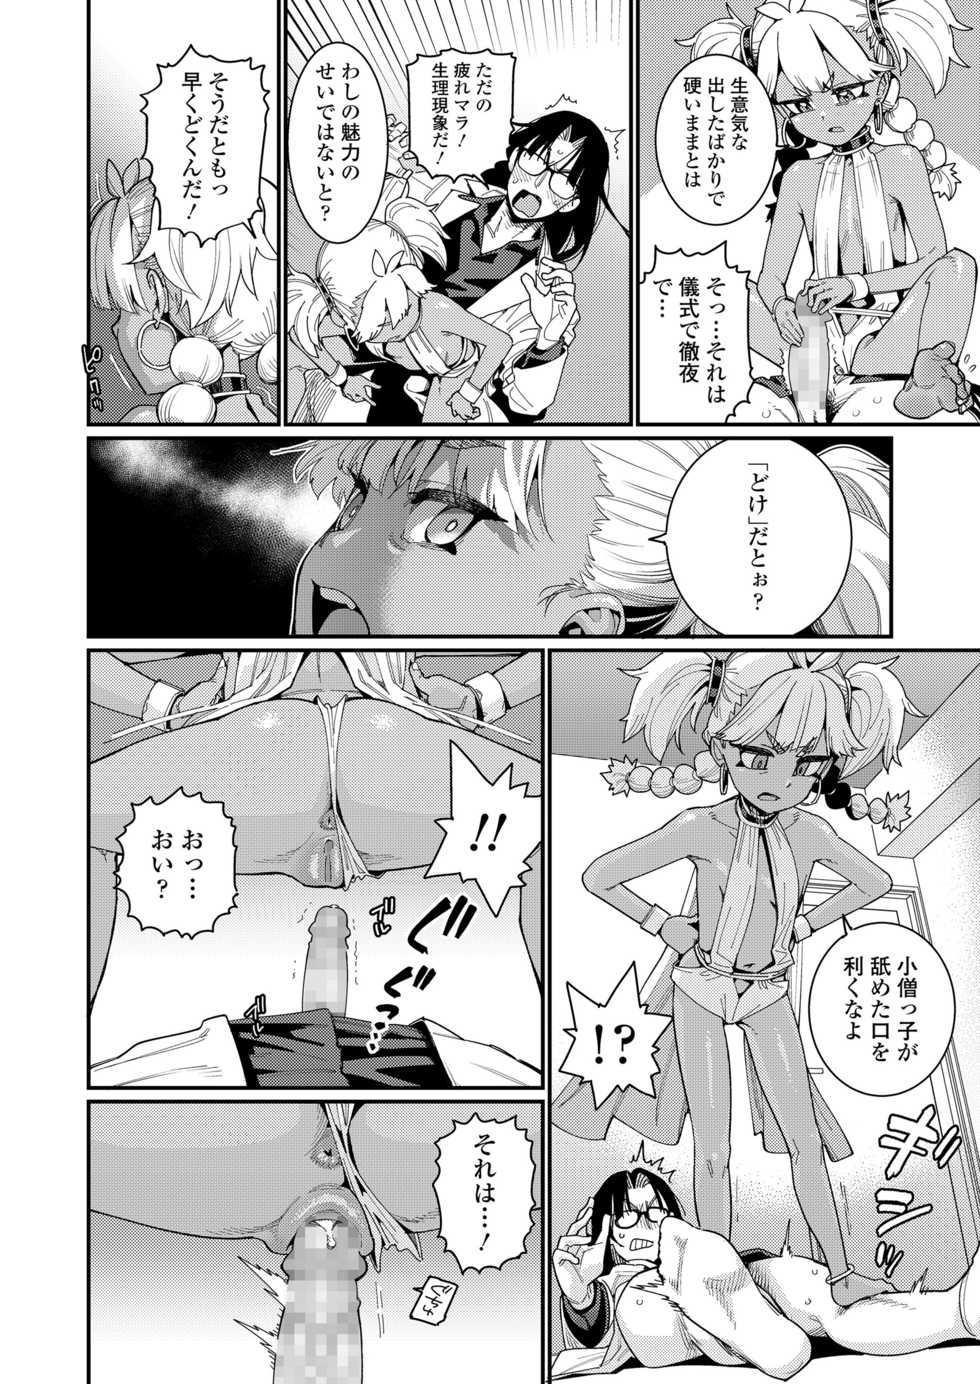 Towako 10 [Digital] - Page 16